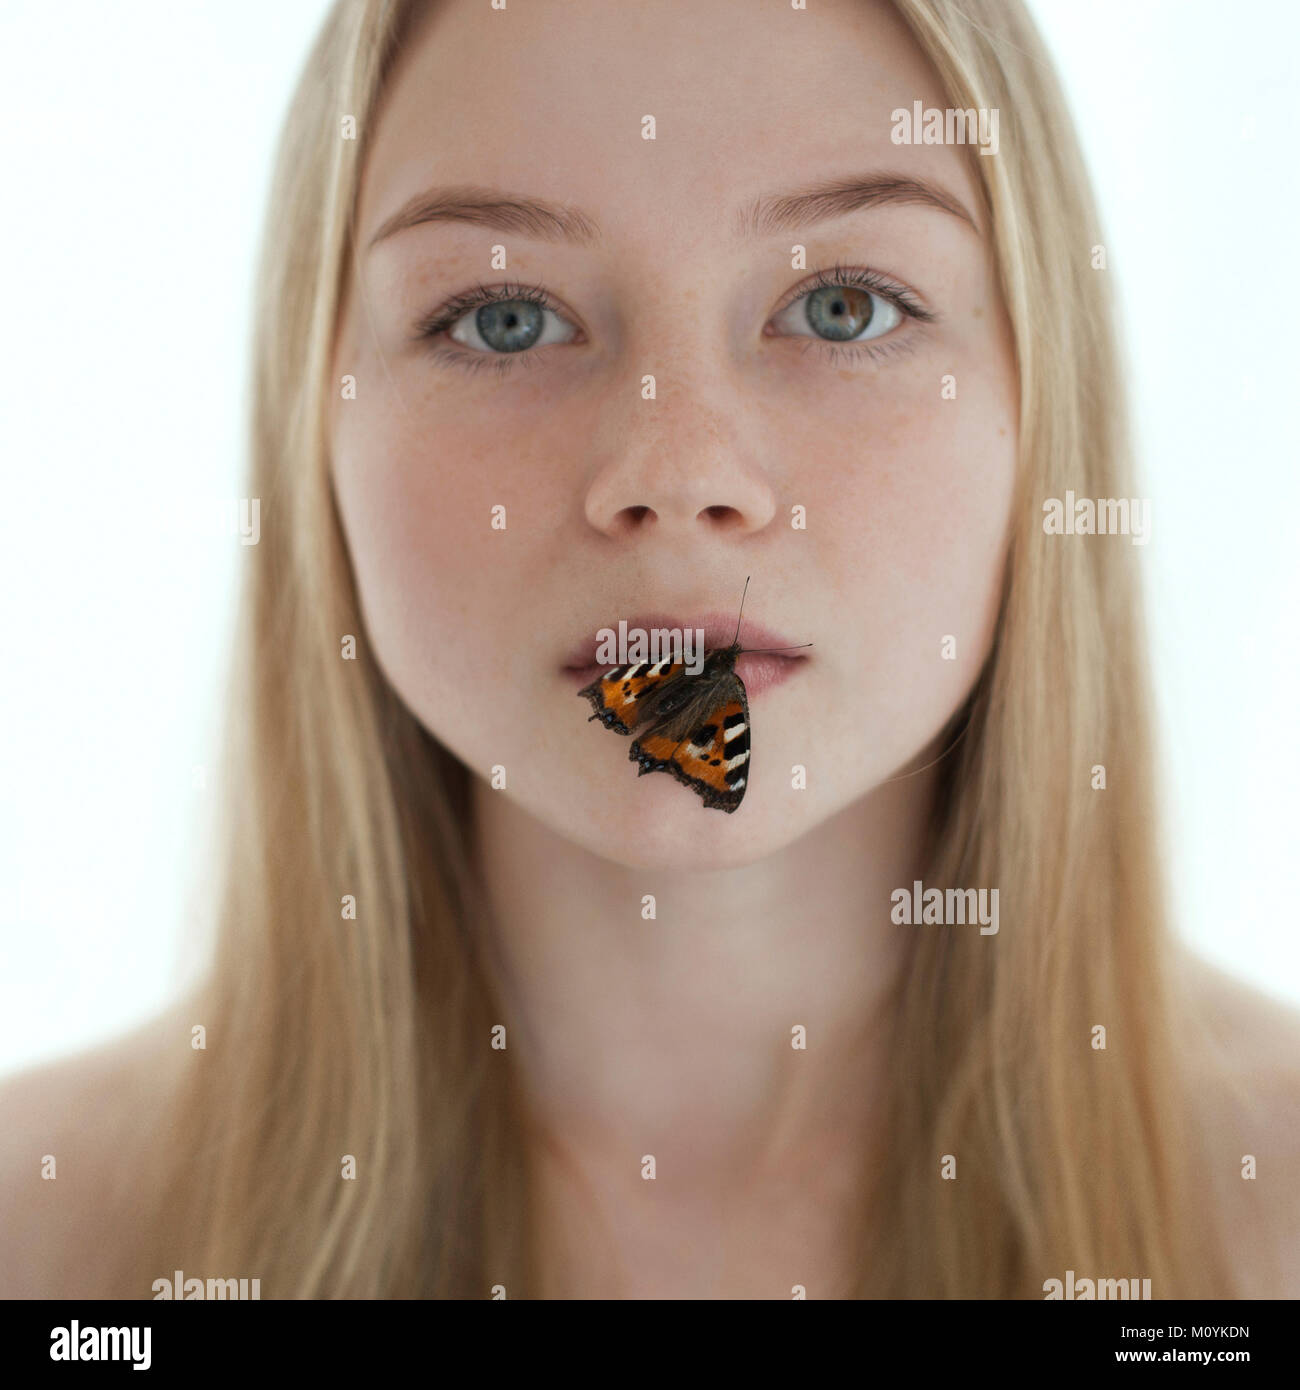 Mariposa en labios de caucásico adolescente Foto de stock